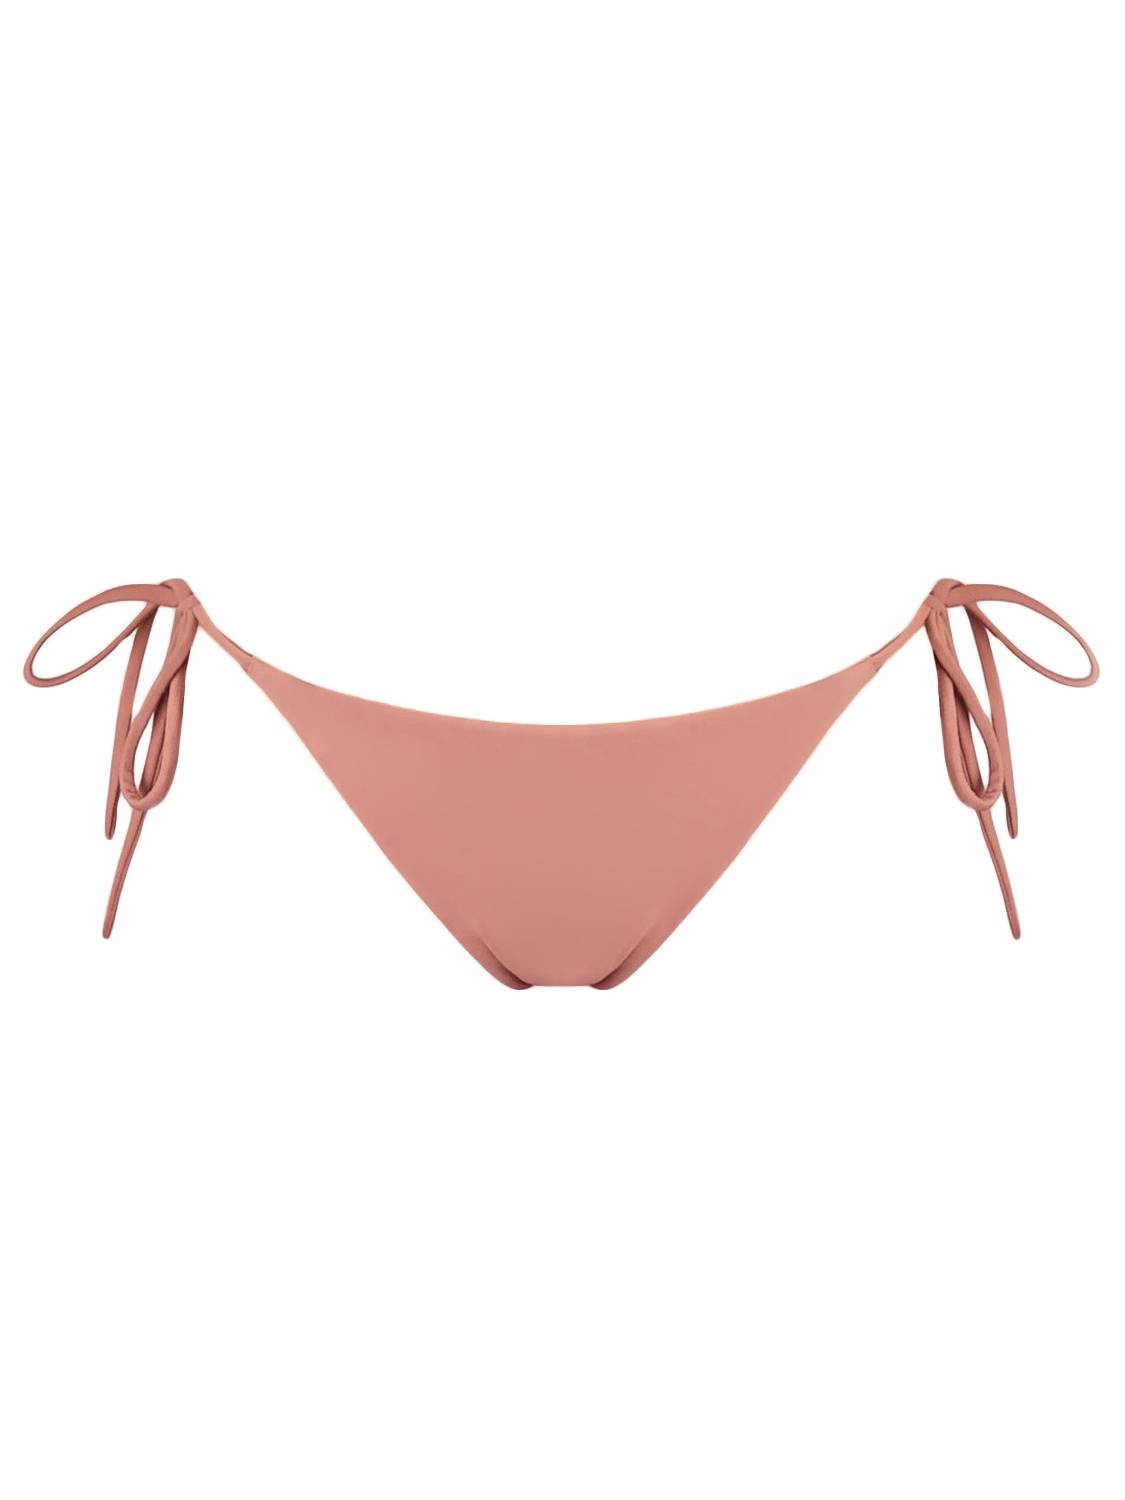 acaia dół kremowy rose rożowy pink polska marka kostium kąpielowy wiązany bikini cream bikini bottom swimwear swimsuit spaghetti straps